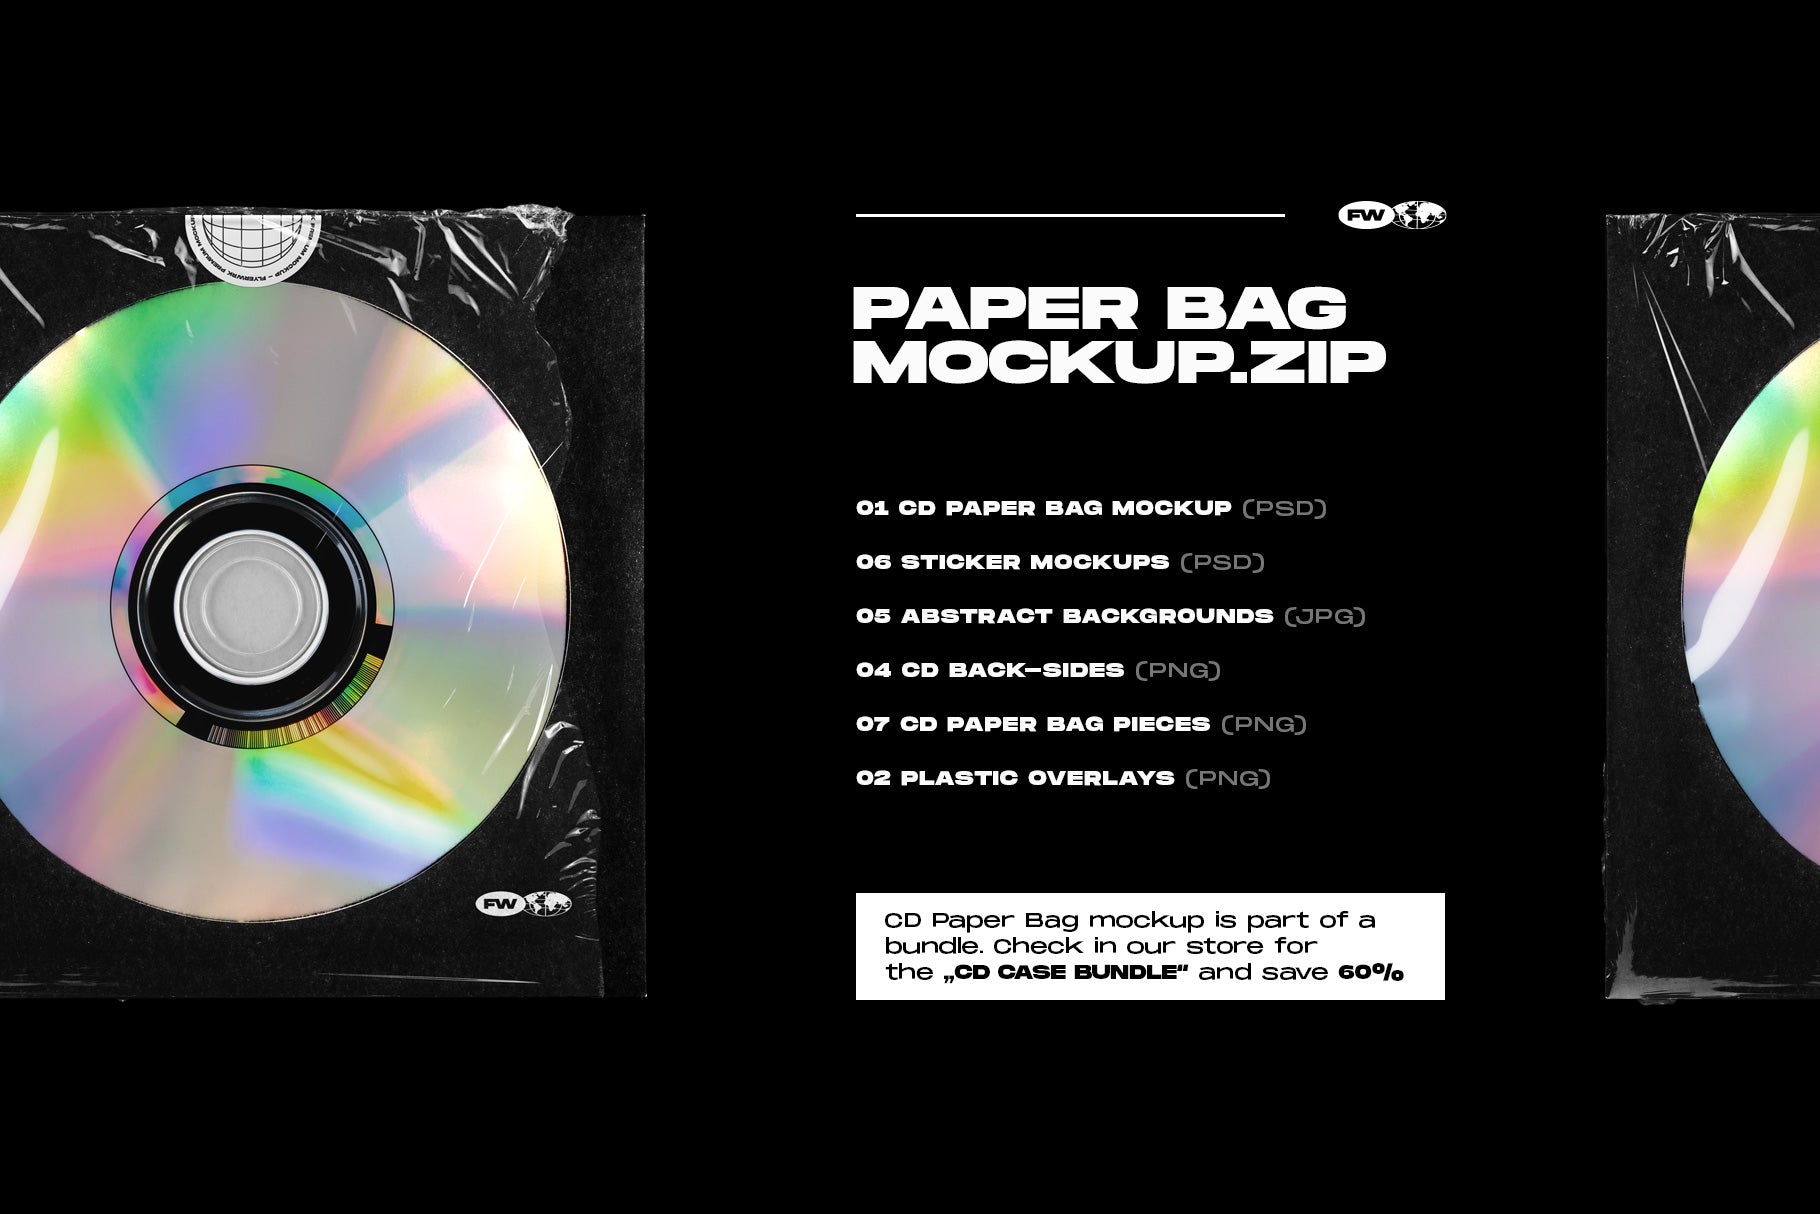 CD Paper Bag Mockup